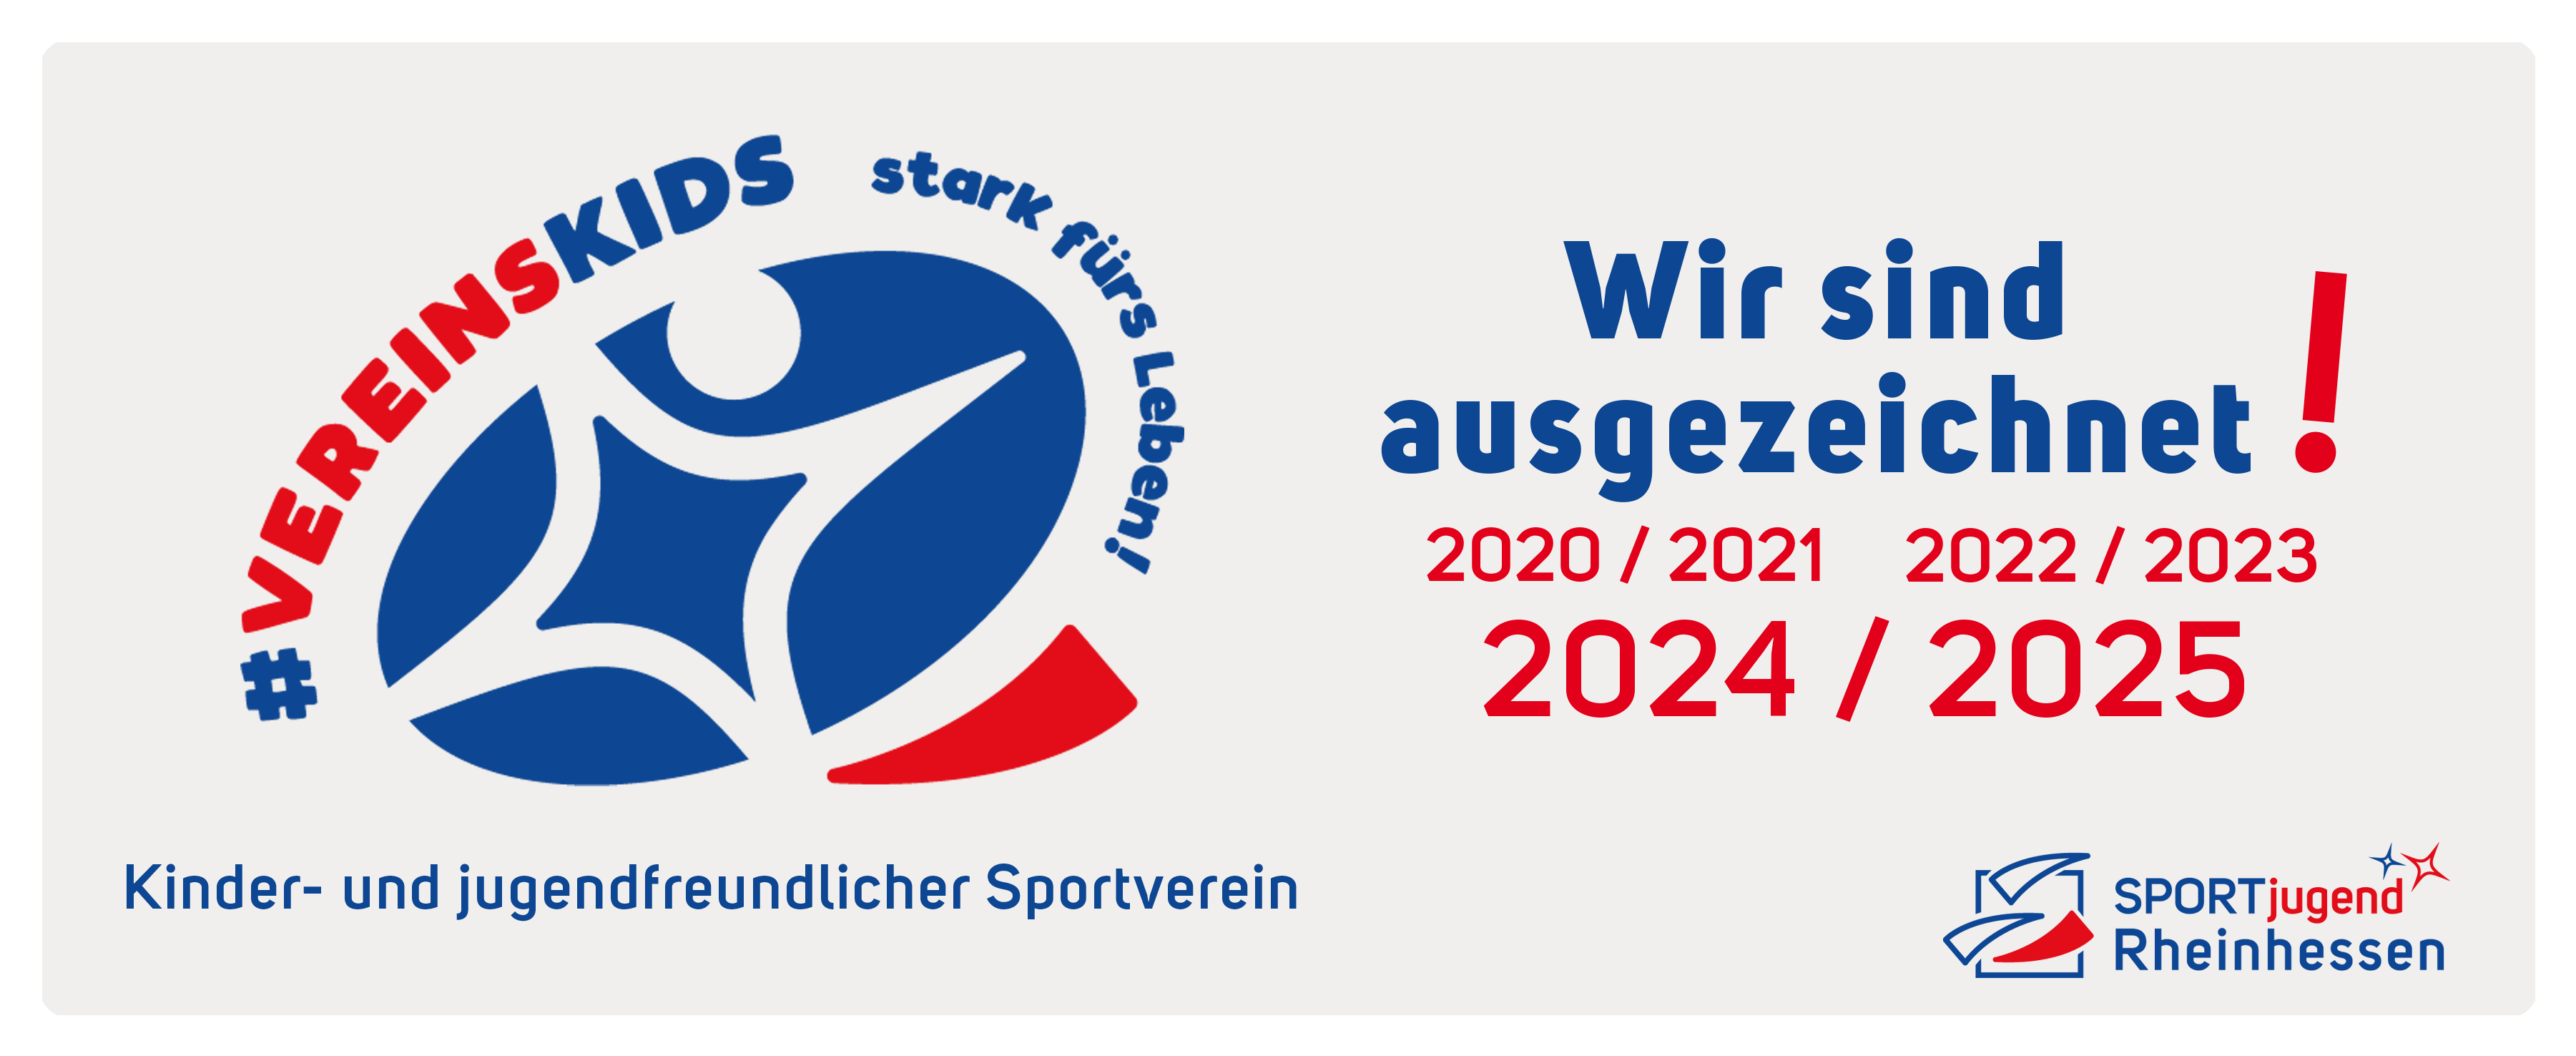 https://sportbund-rheinhessen.de/sportjugend/themen-projekte-1/guetesiegel